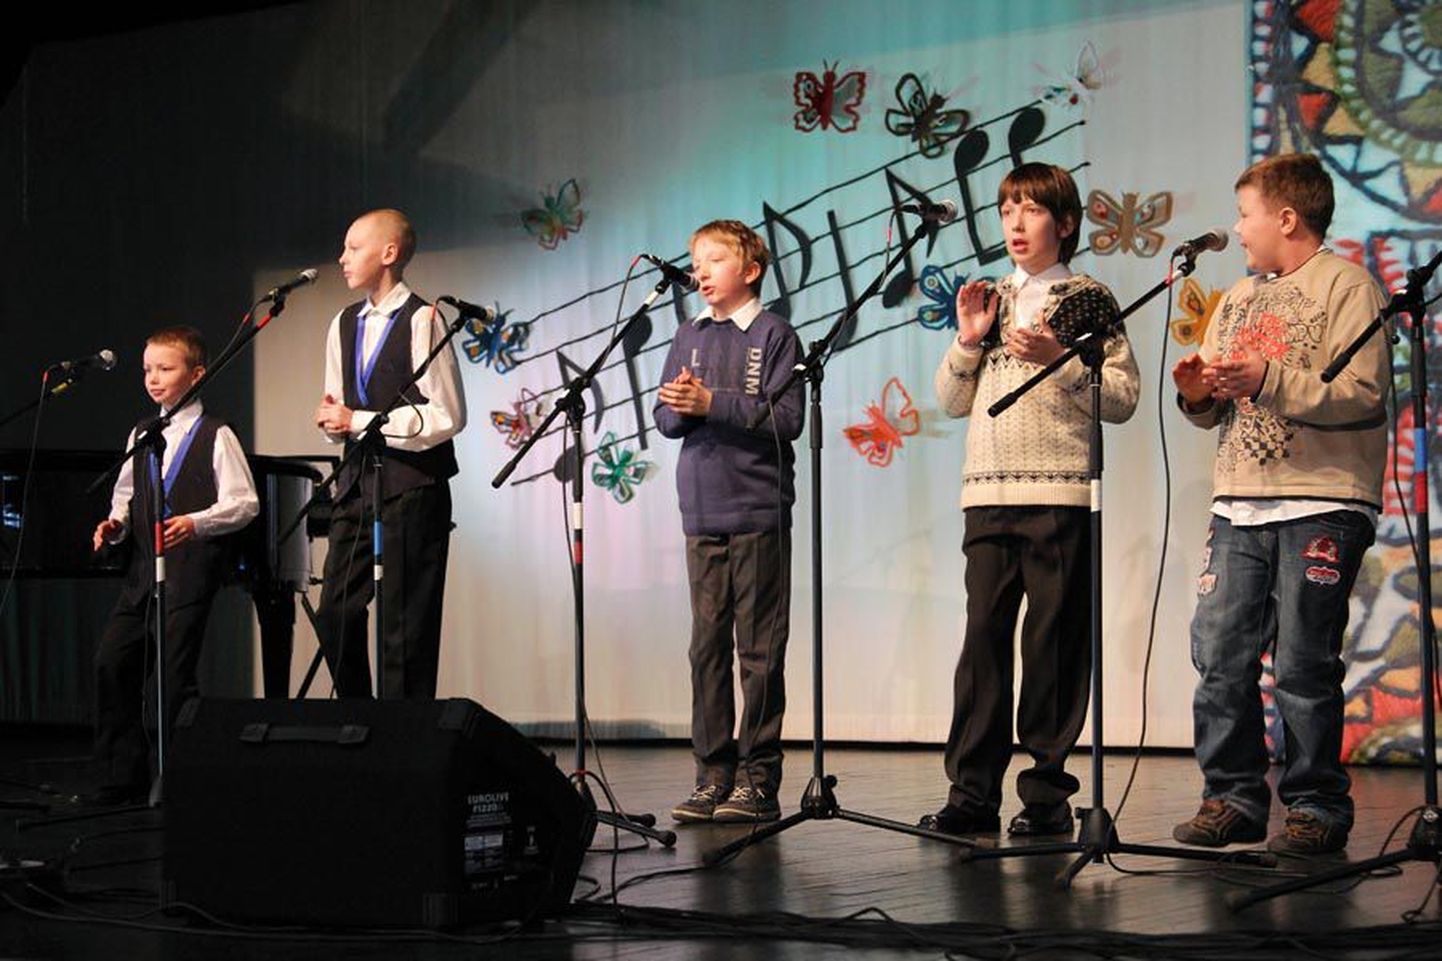 Tallinna Tondi põhikooli ansambli poisid jõudsid Karksi-Nuia paarkümmend minutit enne lauluvõistluse algust. Kiiresti tehti proovilaulmine ning siis hakati esinemise tarbeks lipse ja veste selga sättima. Esinedes kandsid poisid tumedaid pidurõivaid.